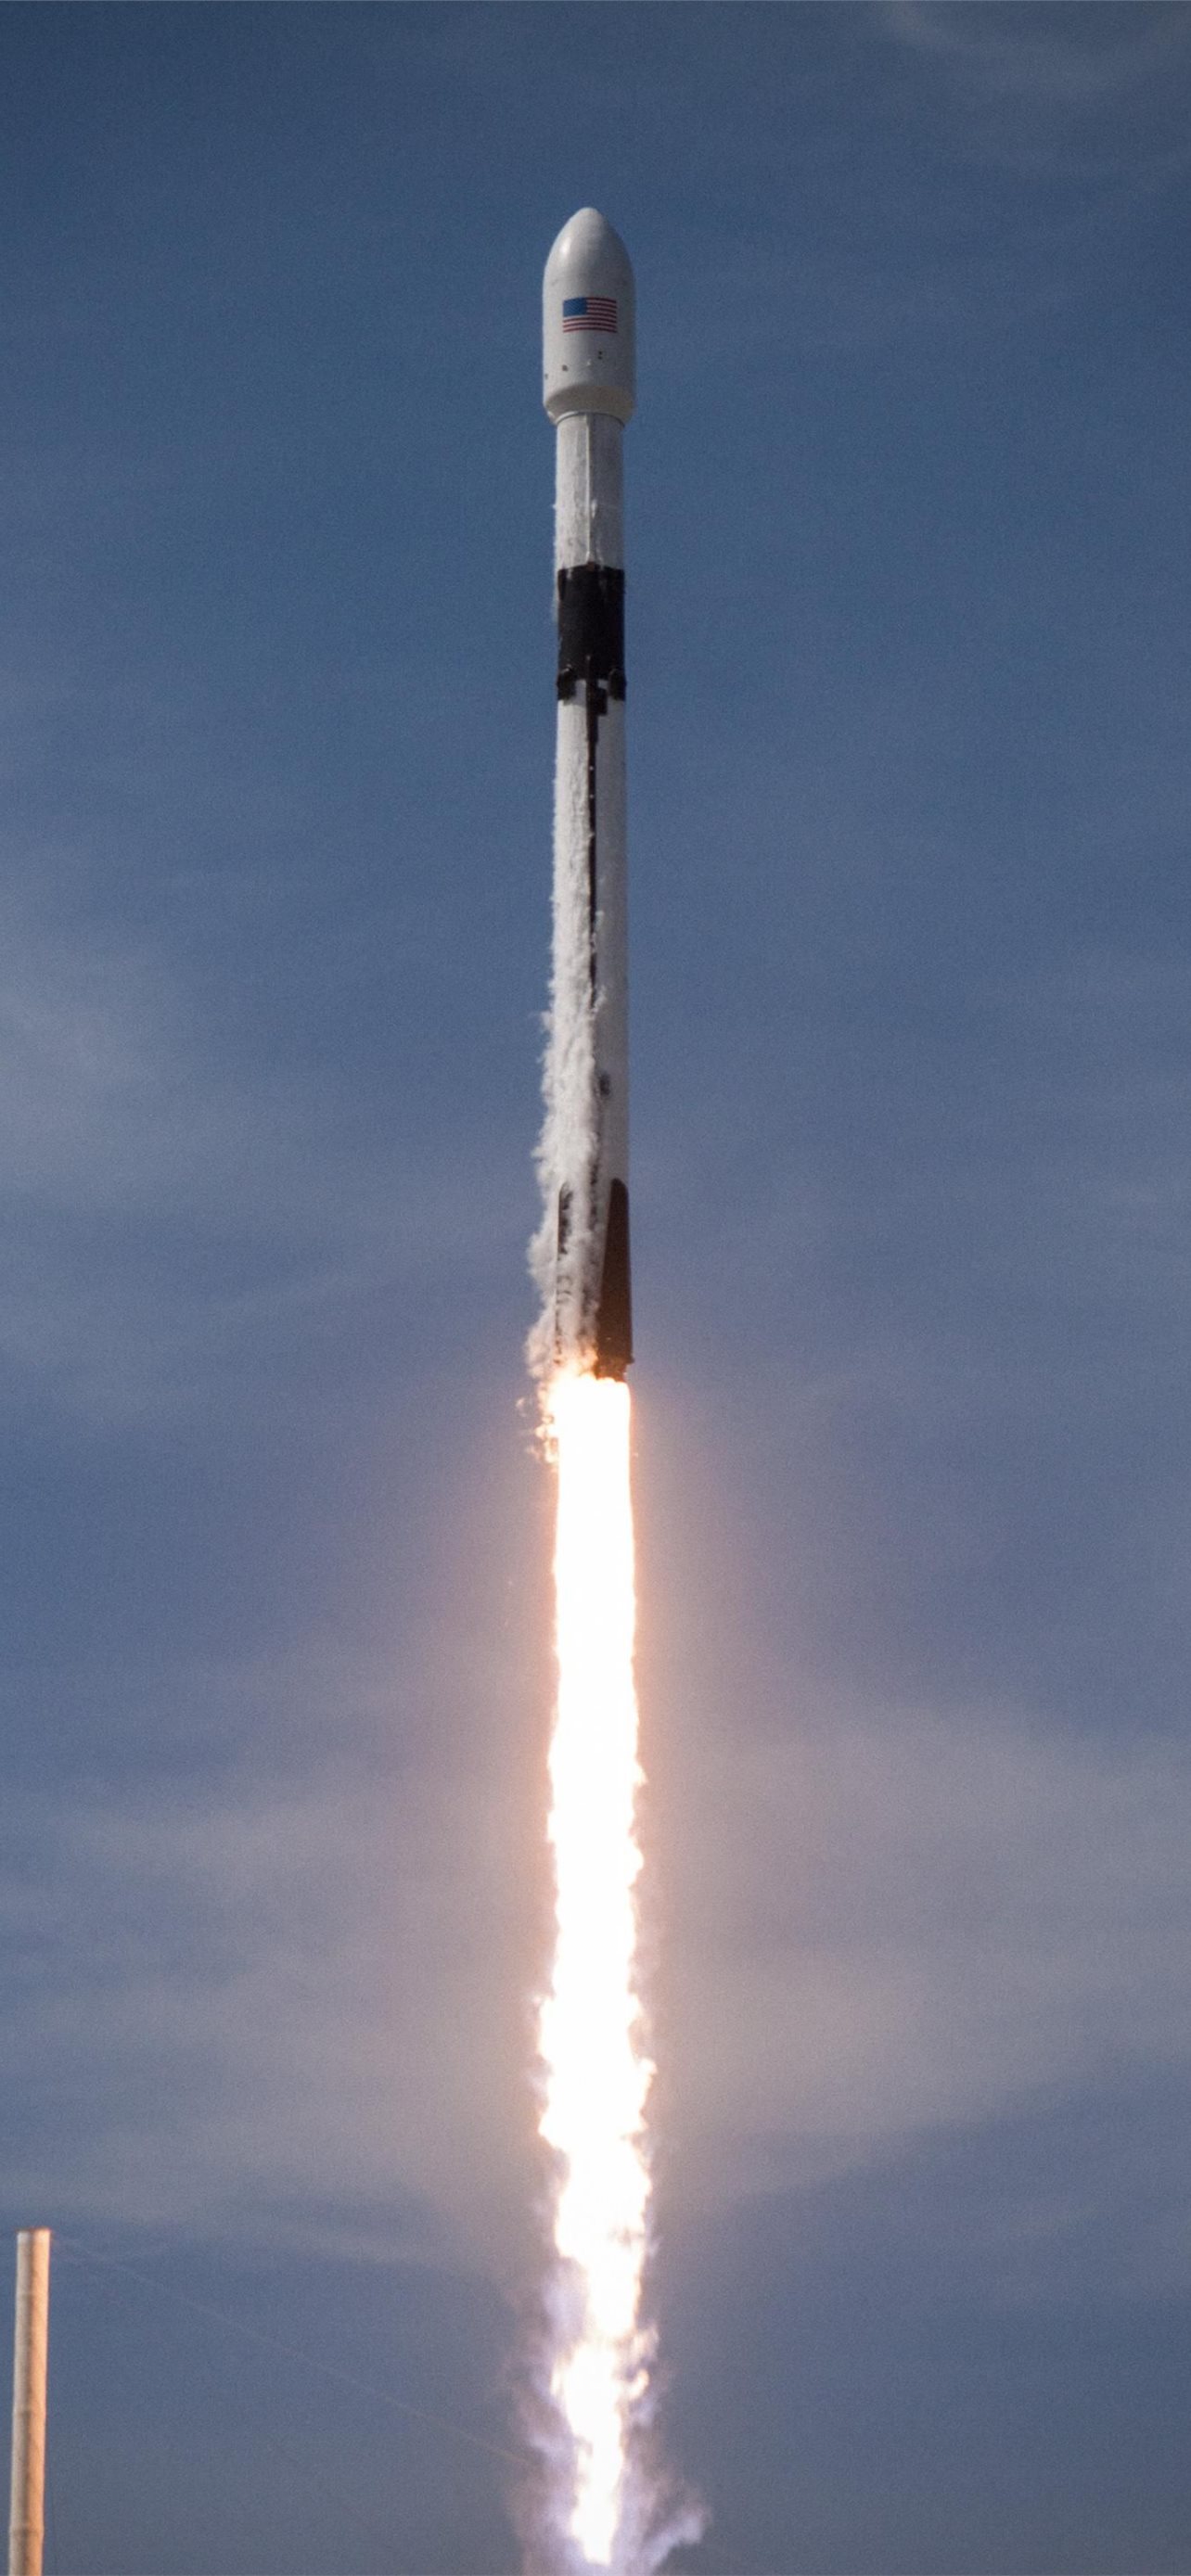 Tinh tế và trang nhã, những hình nền của tàu không gian Falcon 9 Rocket Dragon của SpaceX sẽ mang lại cho bạn cảm giác như đang ở trước mắt một sản phẩm khoa học tuyệt vời. Hãy lựa chọn những bức ảnh này để tăng cường sự yêu thích của bạn với không gian và vũ trụ. 